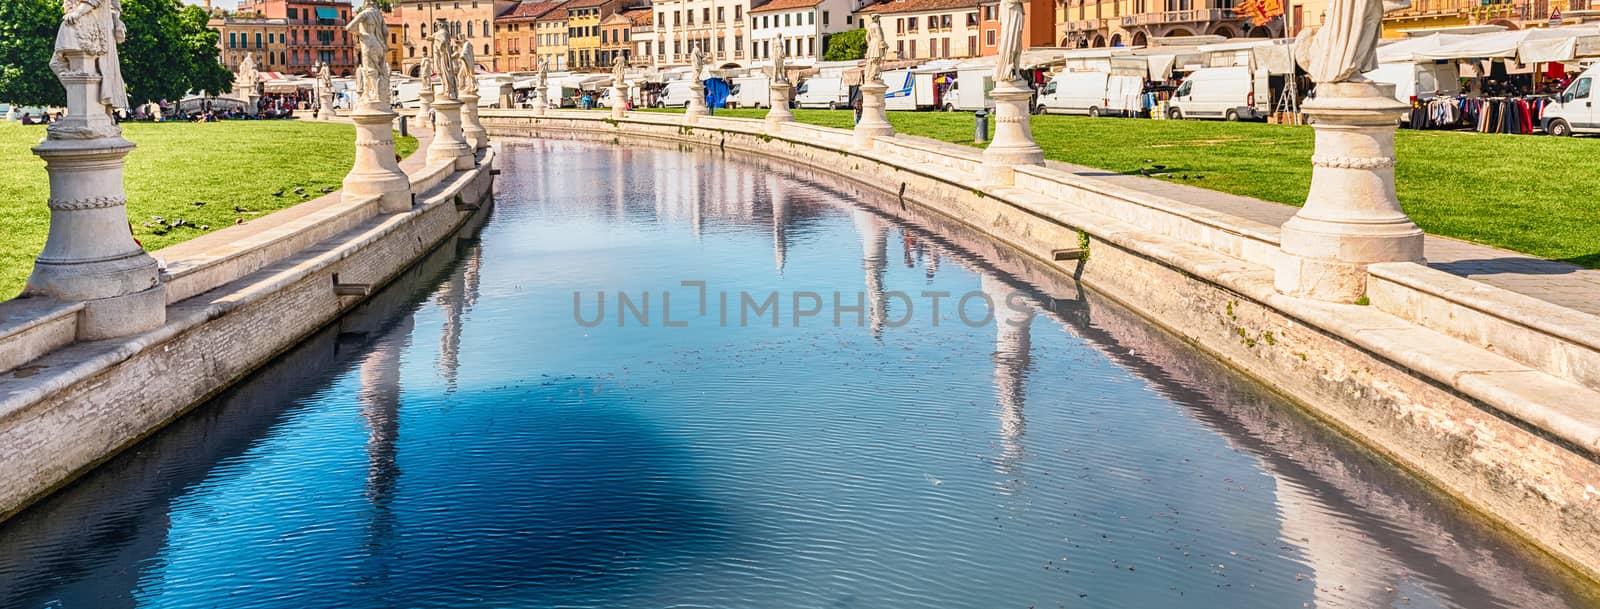 The scenic square of Prato della Valle in Padua, Italy by marcorubino